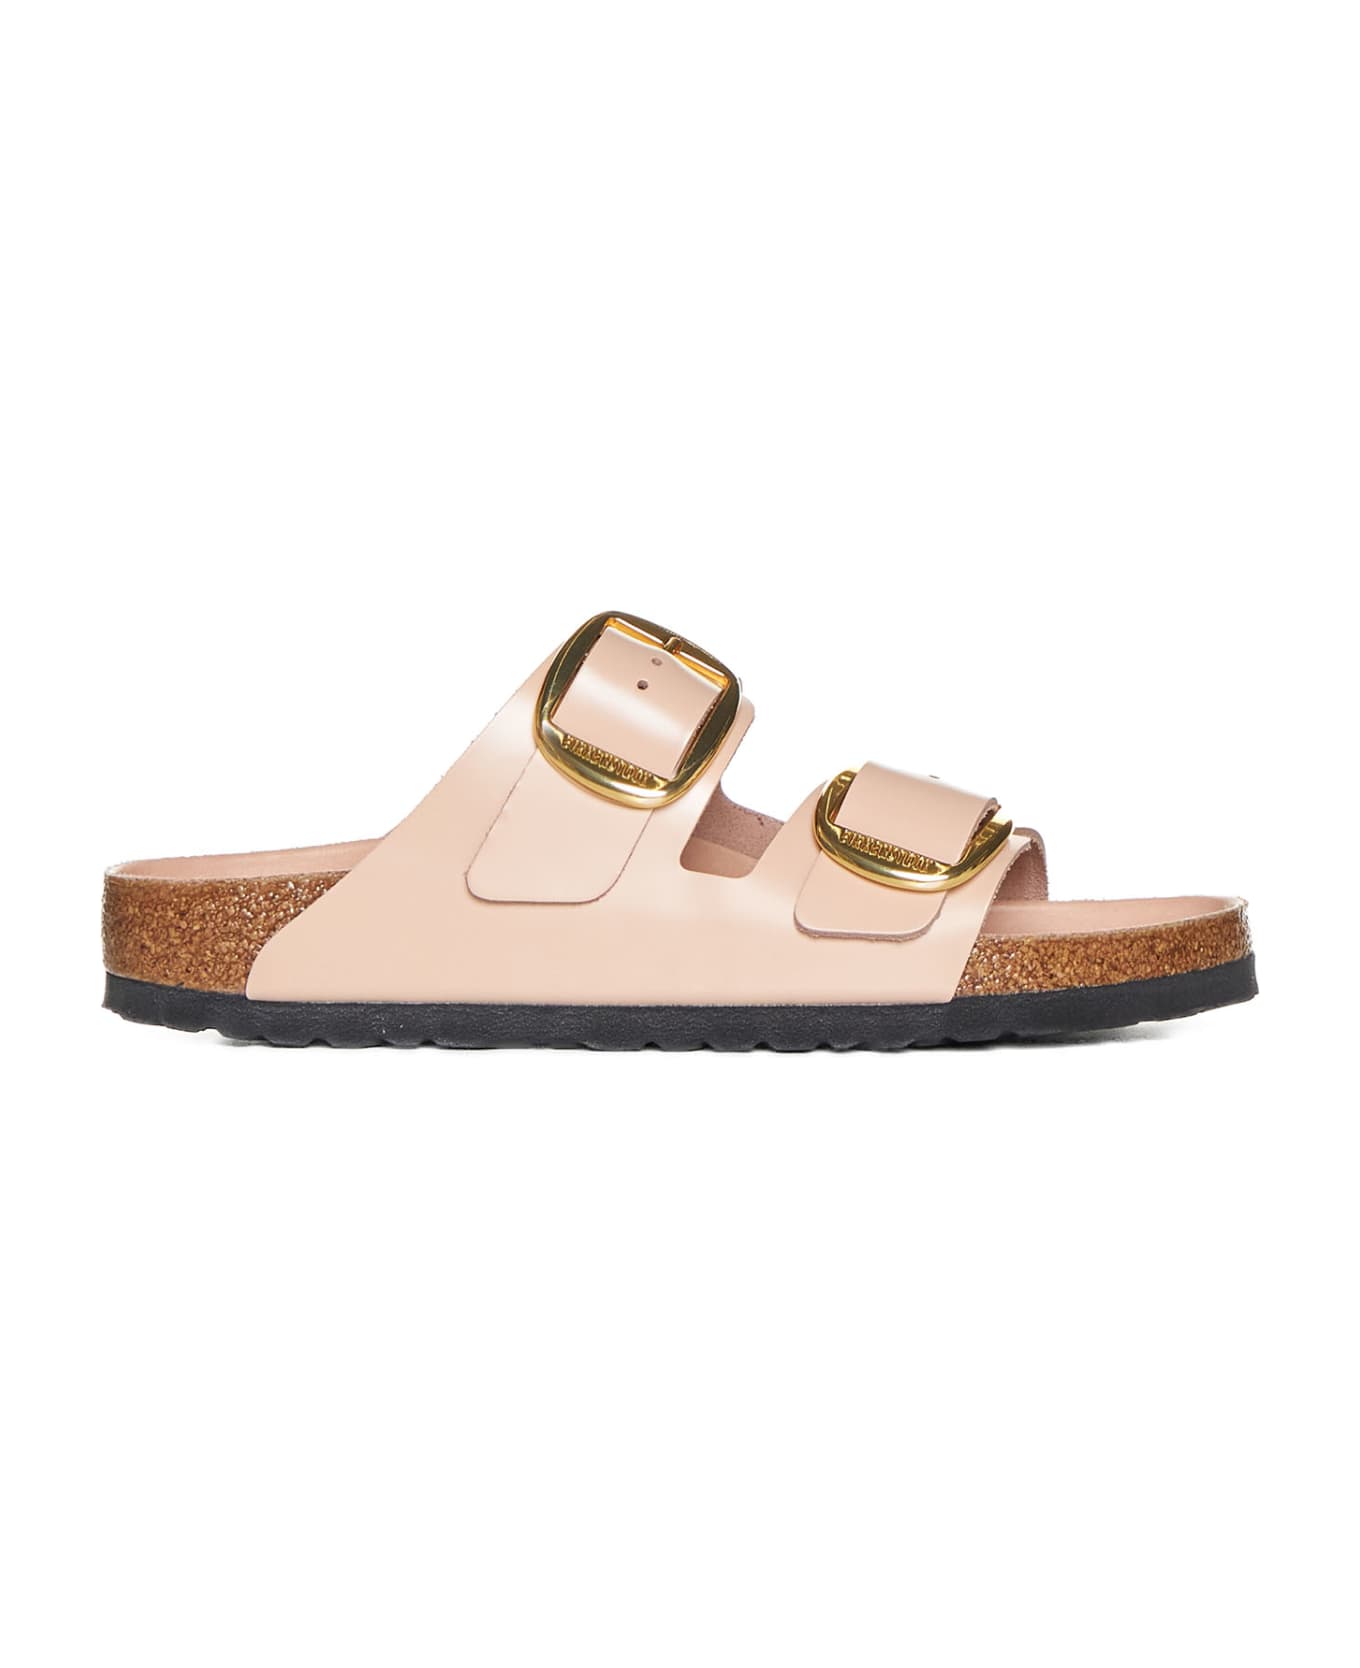 Birkenstock Sandals - New beige